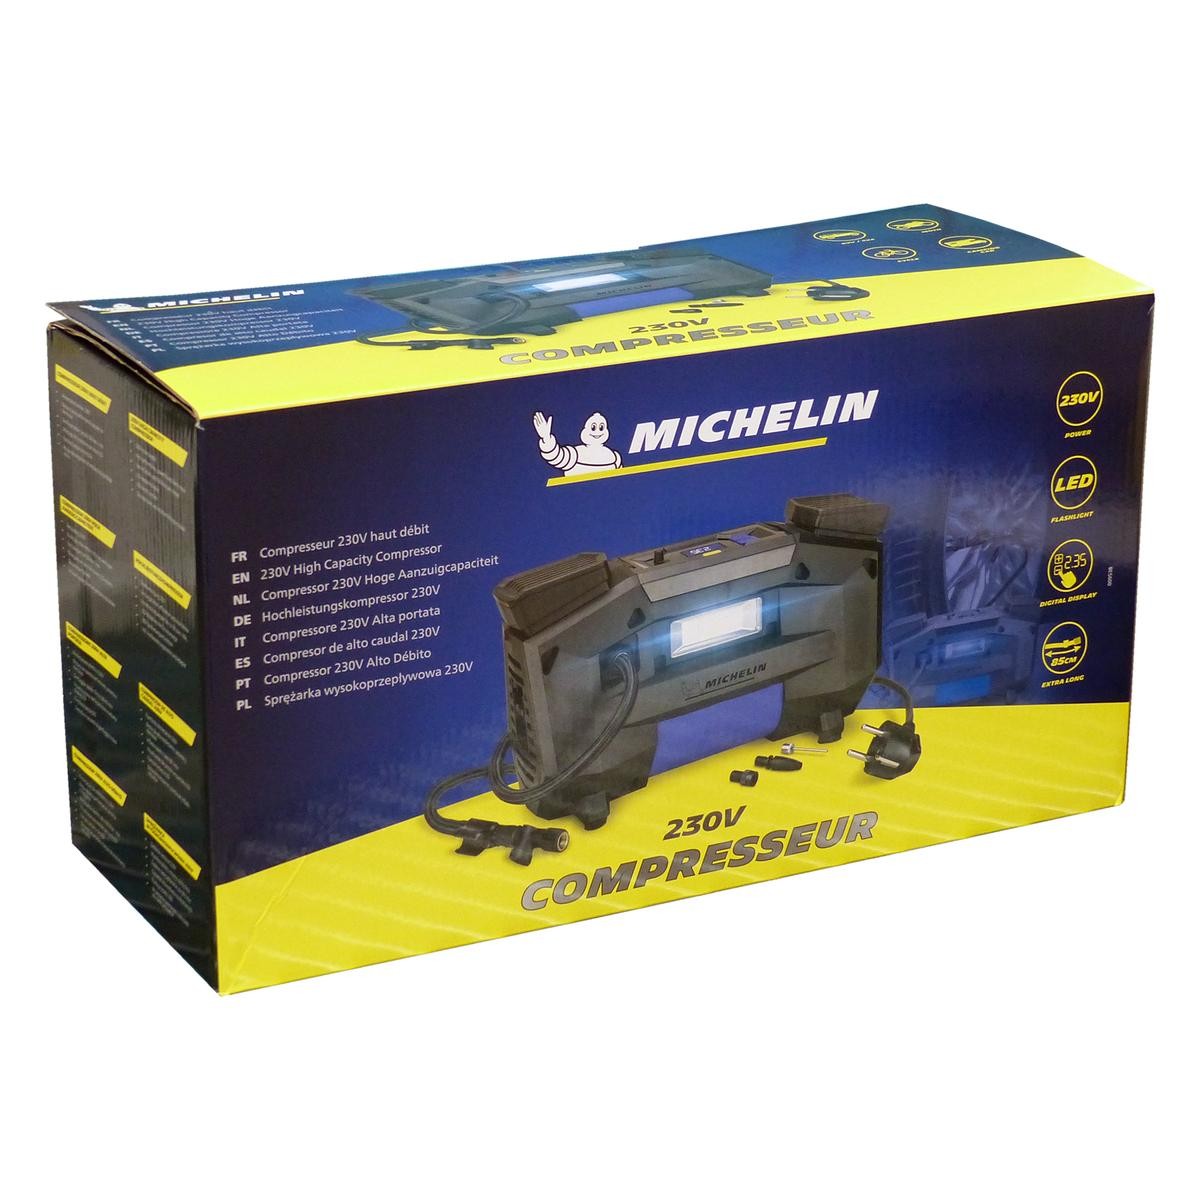 knoflook Vervelen Bedienen 009538 Michelin Luchtcompressor 230V, 7 bar, digitaal met  sigarettenaanstekeraansluiting ▷ AUTODOC prijs en ervaringen